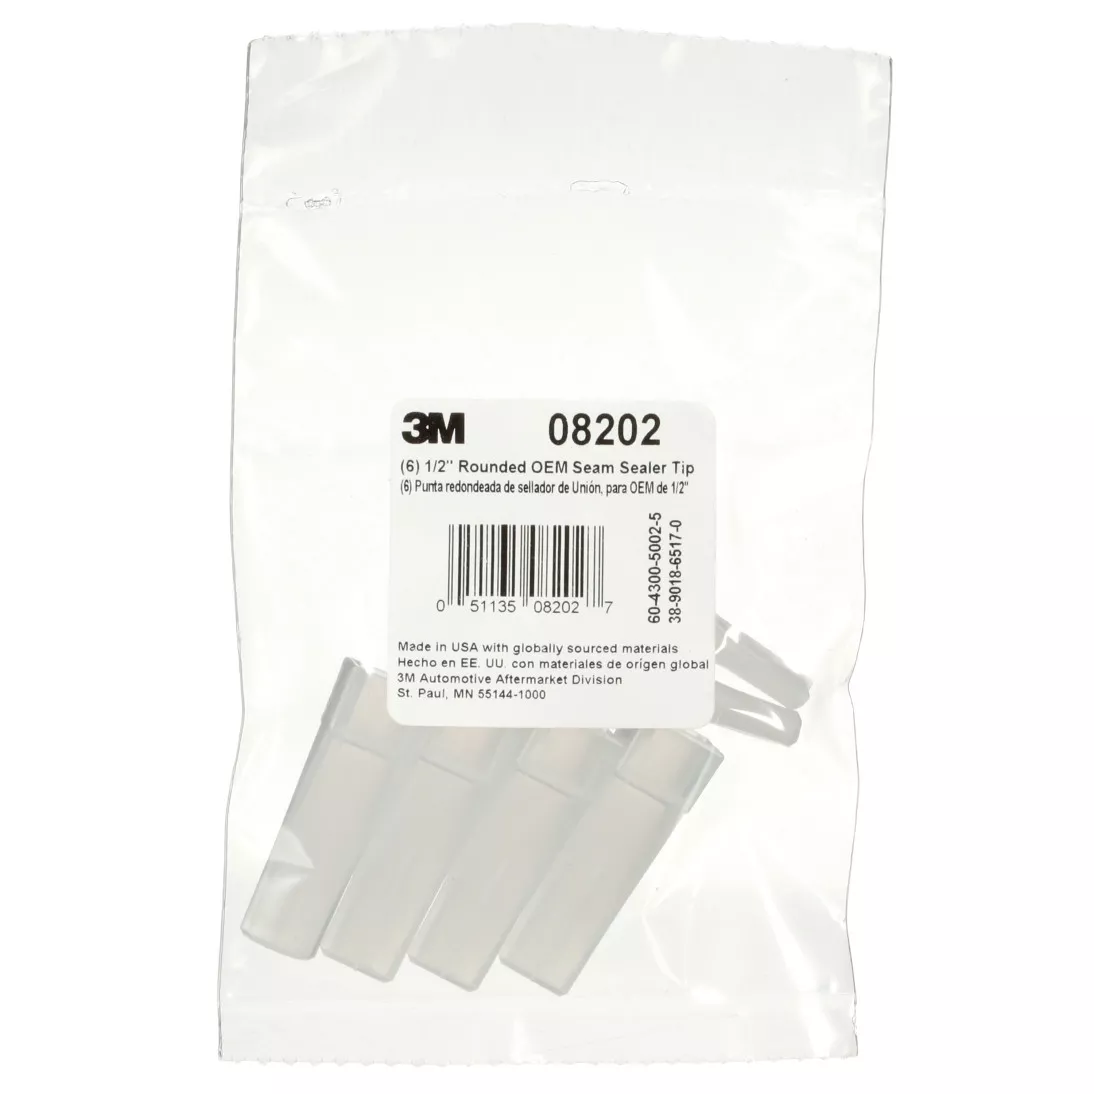 3M™ OEM Seam Sealer Tip, 08202, 3/8 in, Rounded, 6 per bag, 6 bags per
case